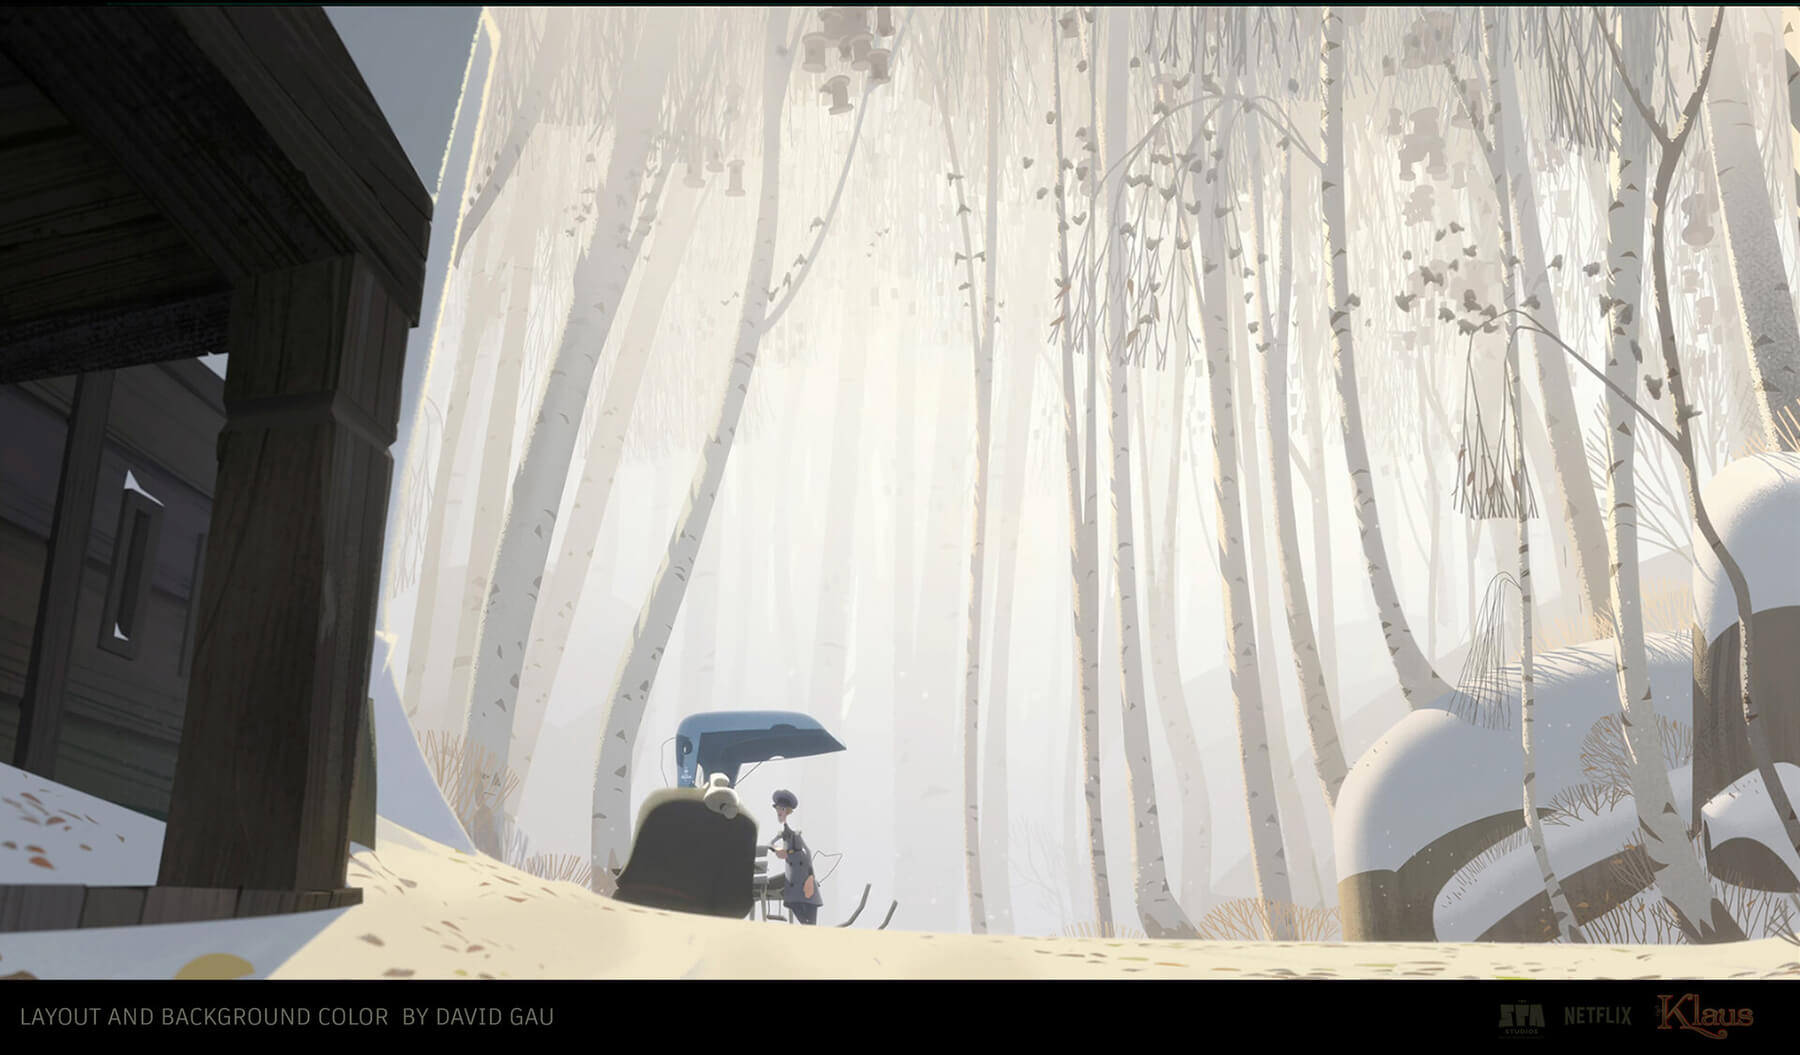 Dos personajes se paran junto a un carruaje antiguo en medio de un brillante bosque nevado.